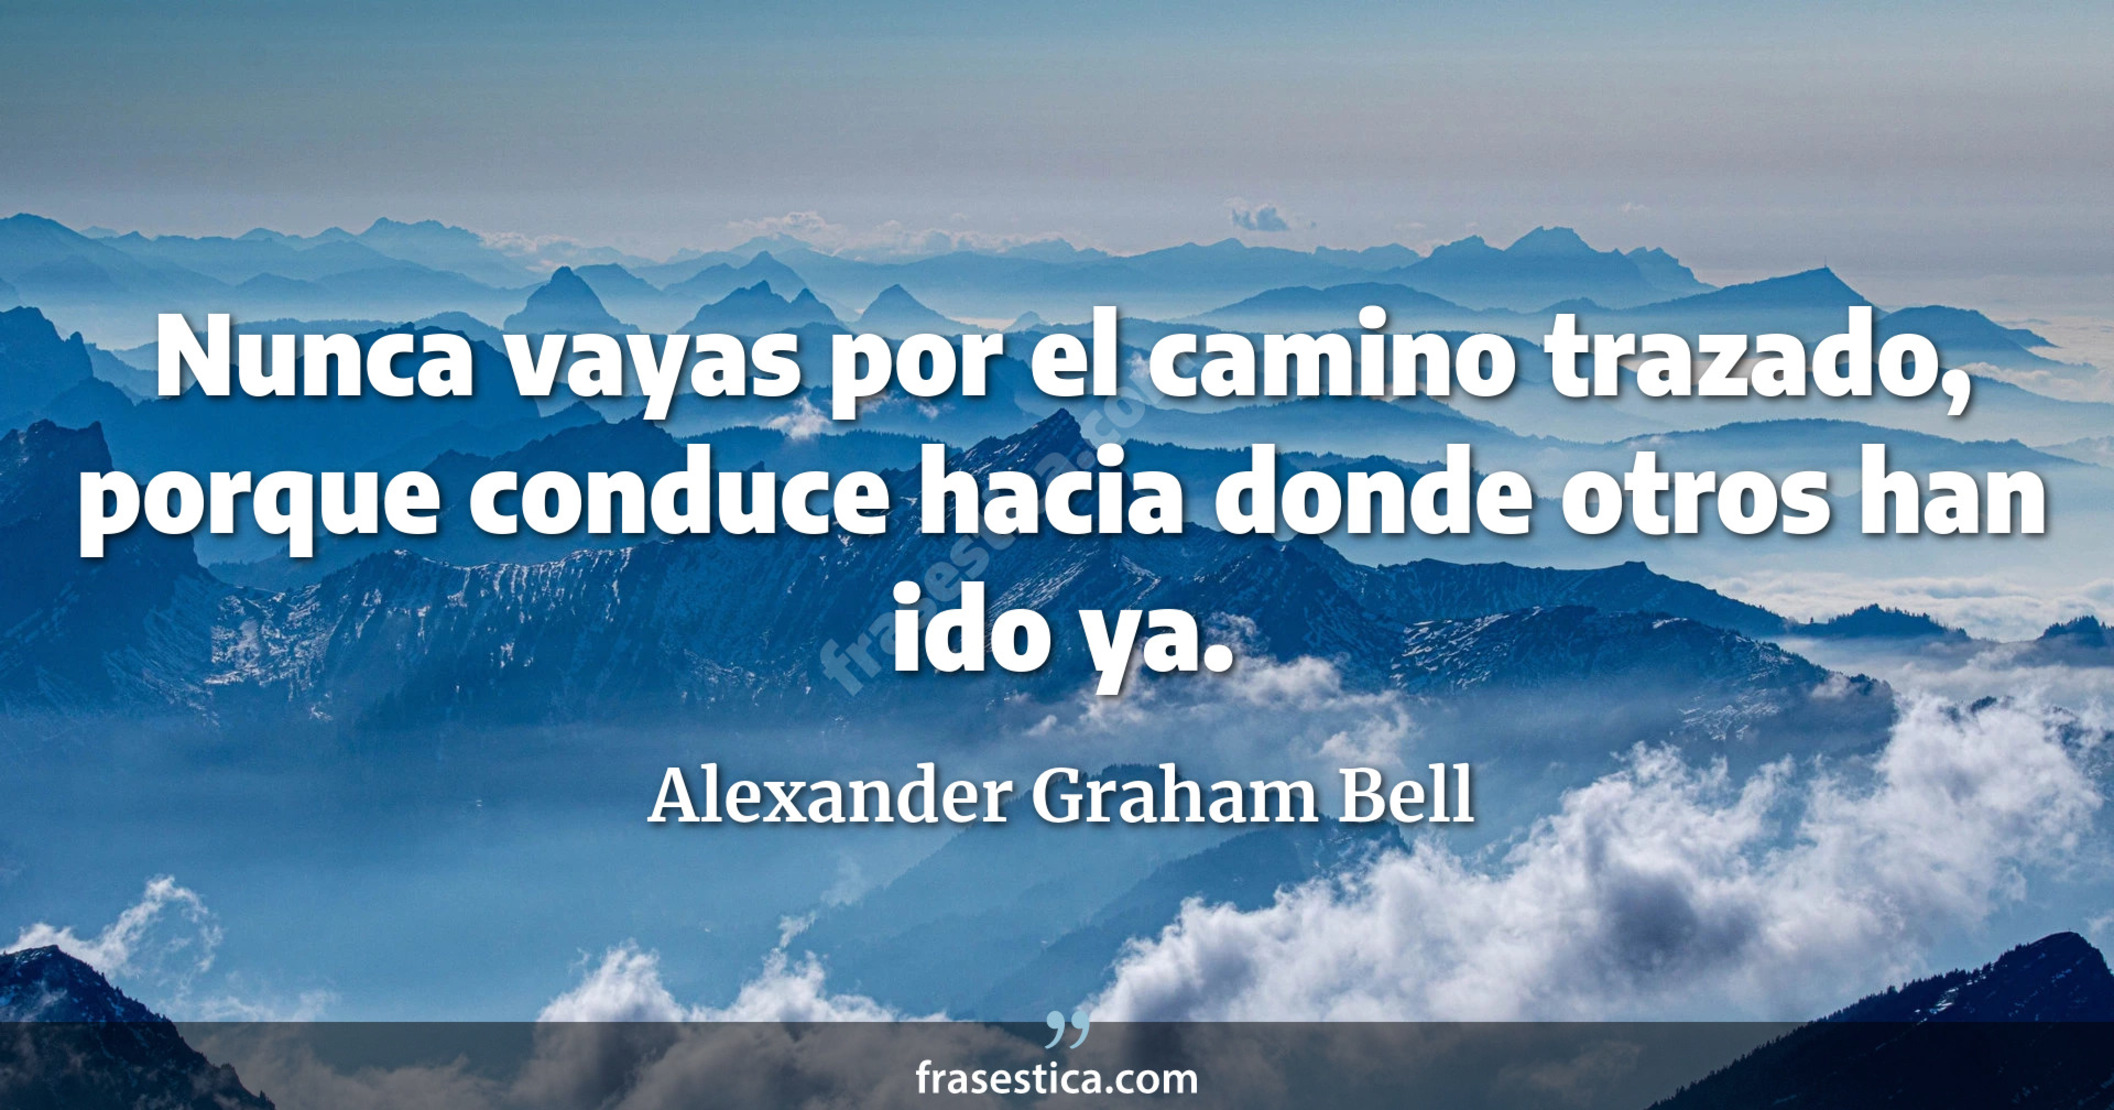 Nunca vayas por el camino trazado, porque conduce hacia donde otros han ido ya. - Alexander Graham Bell